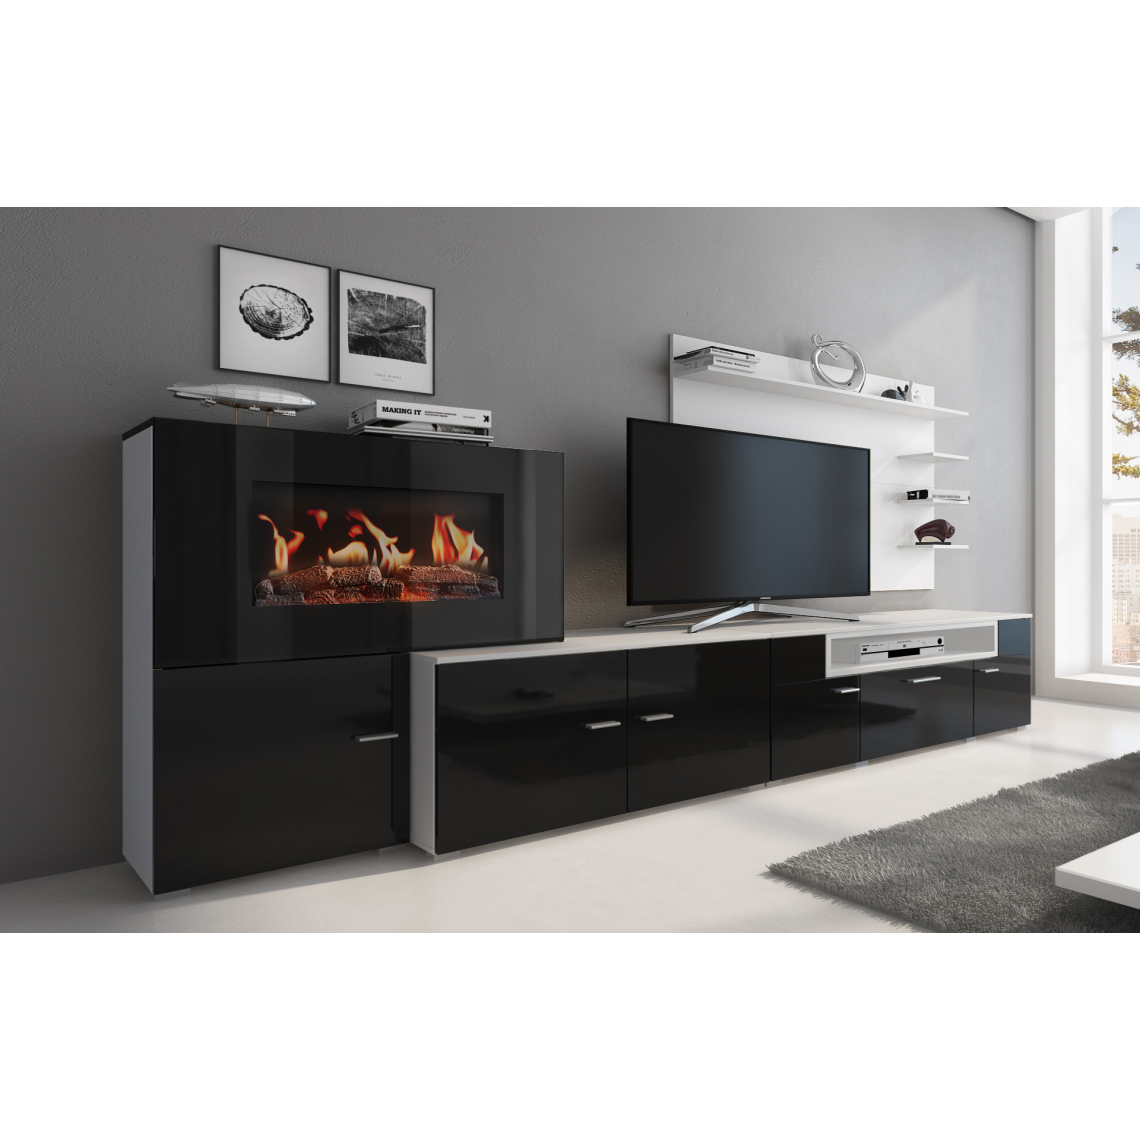 Skraut Home - Meuble+feu électrique,Blanc -Noir laqué, 290x170x45 - Meubles TV, Hi-Fi